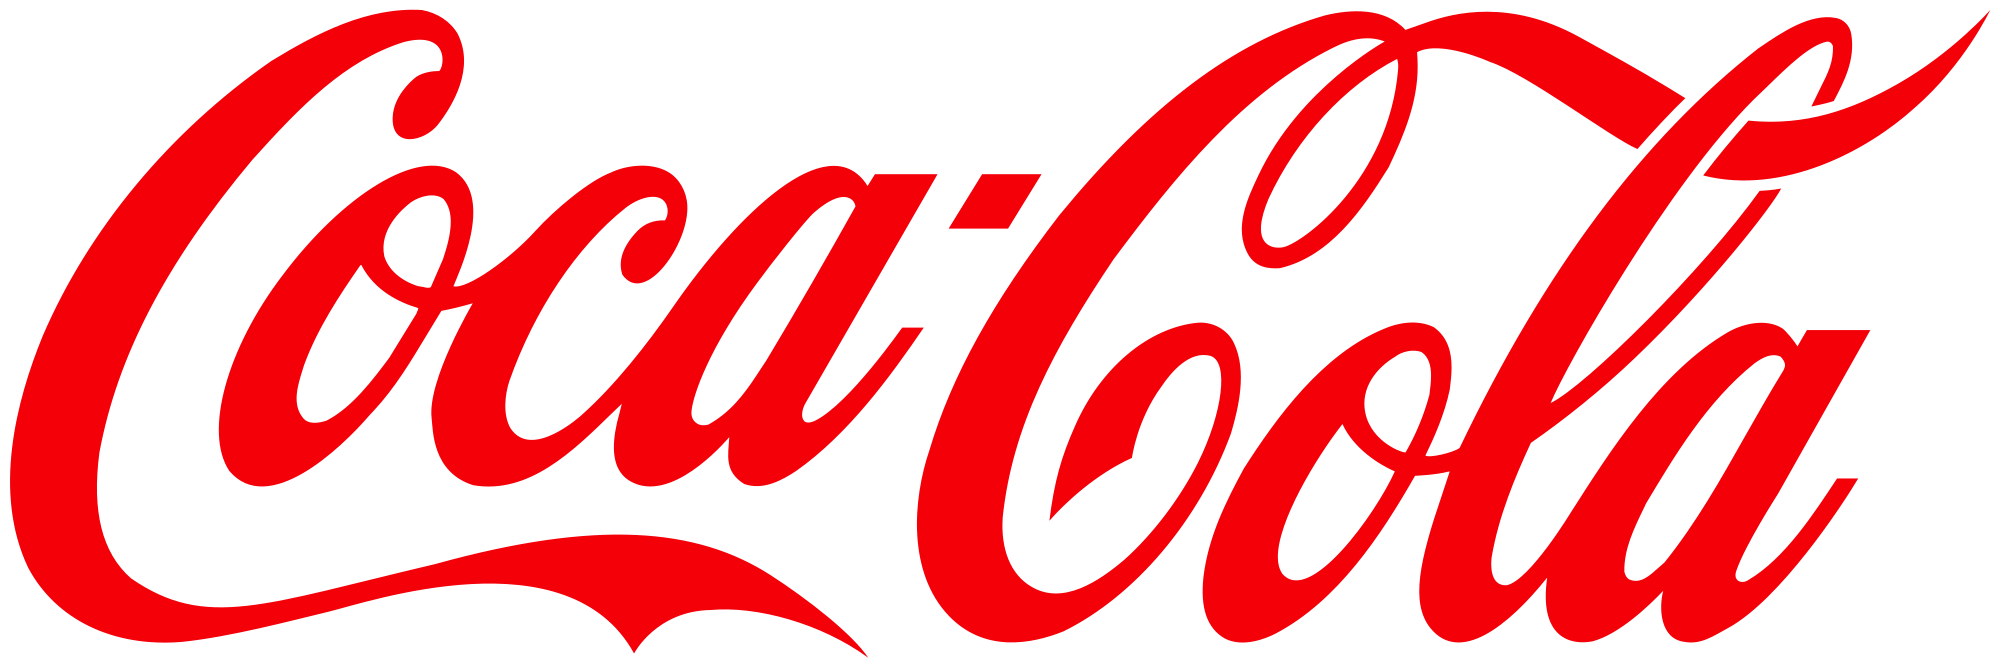 Coca-Cola-Logo.png